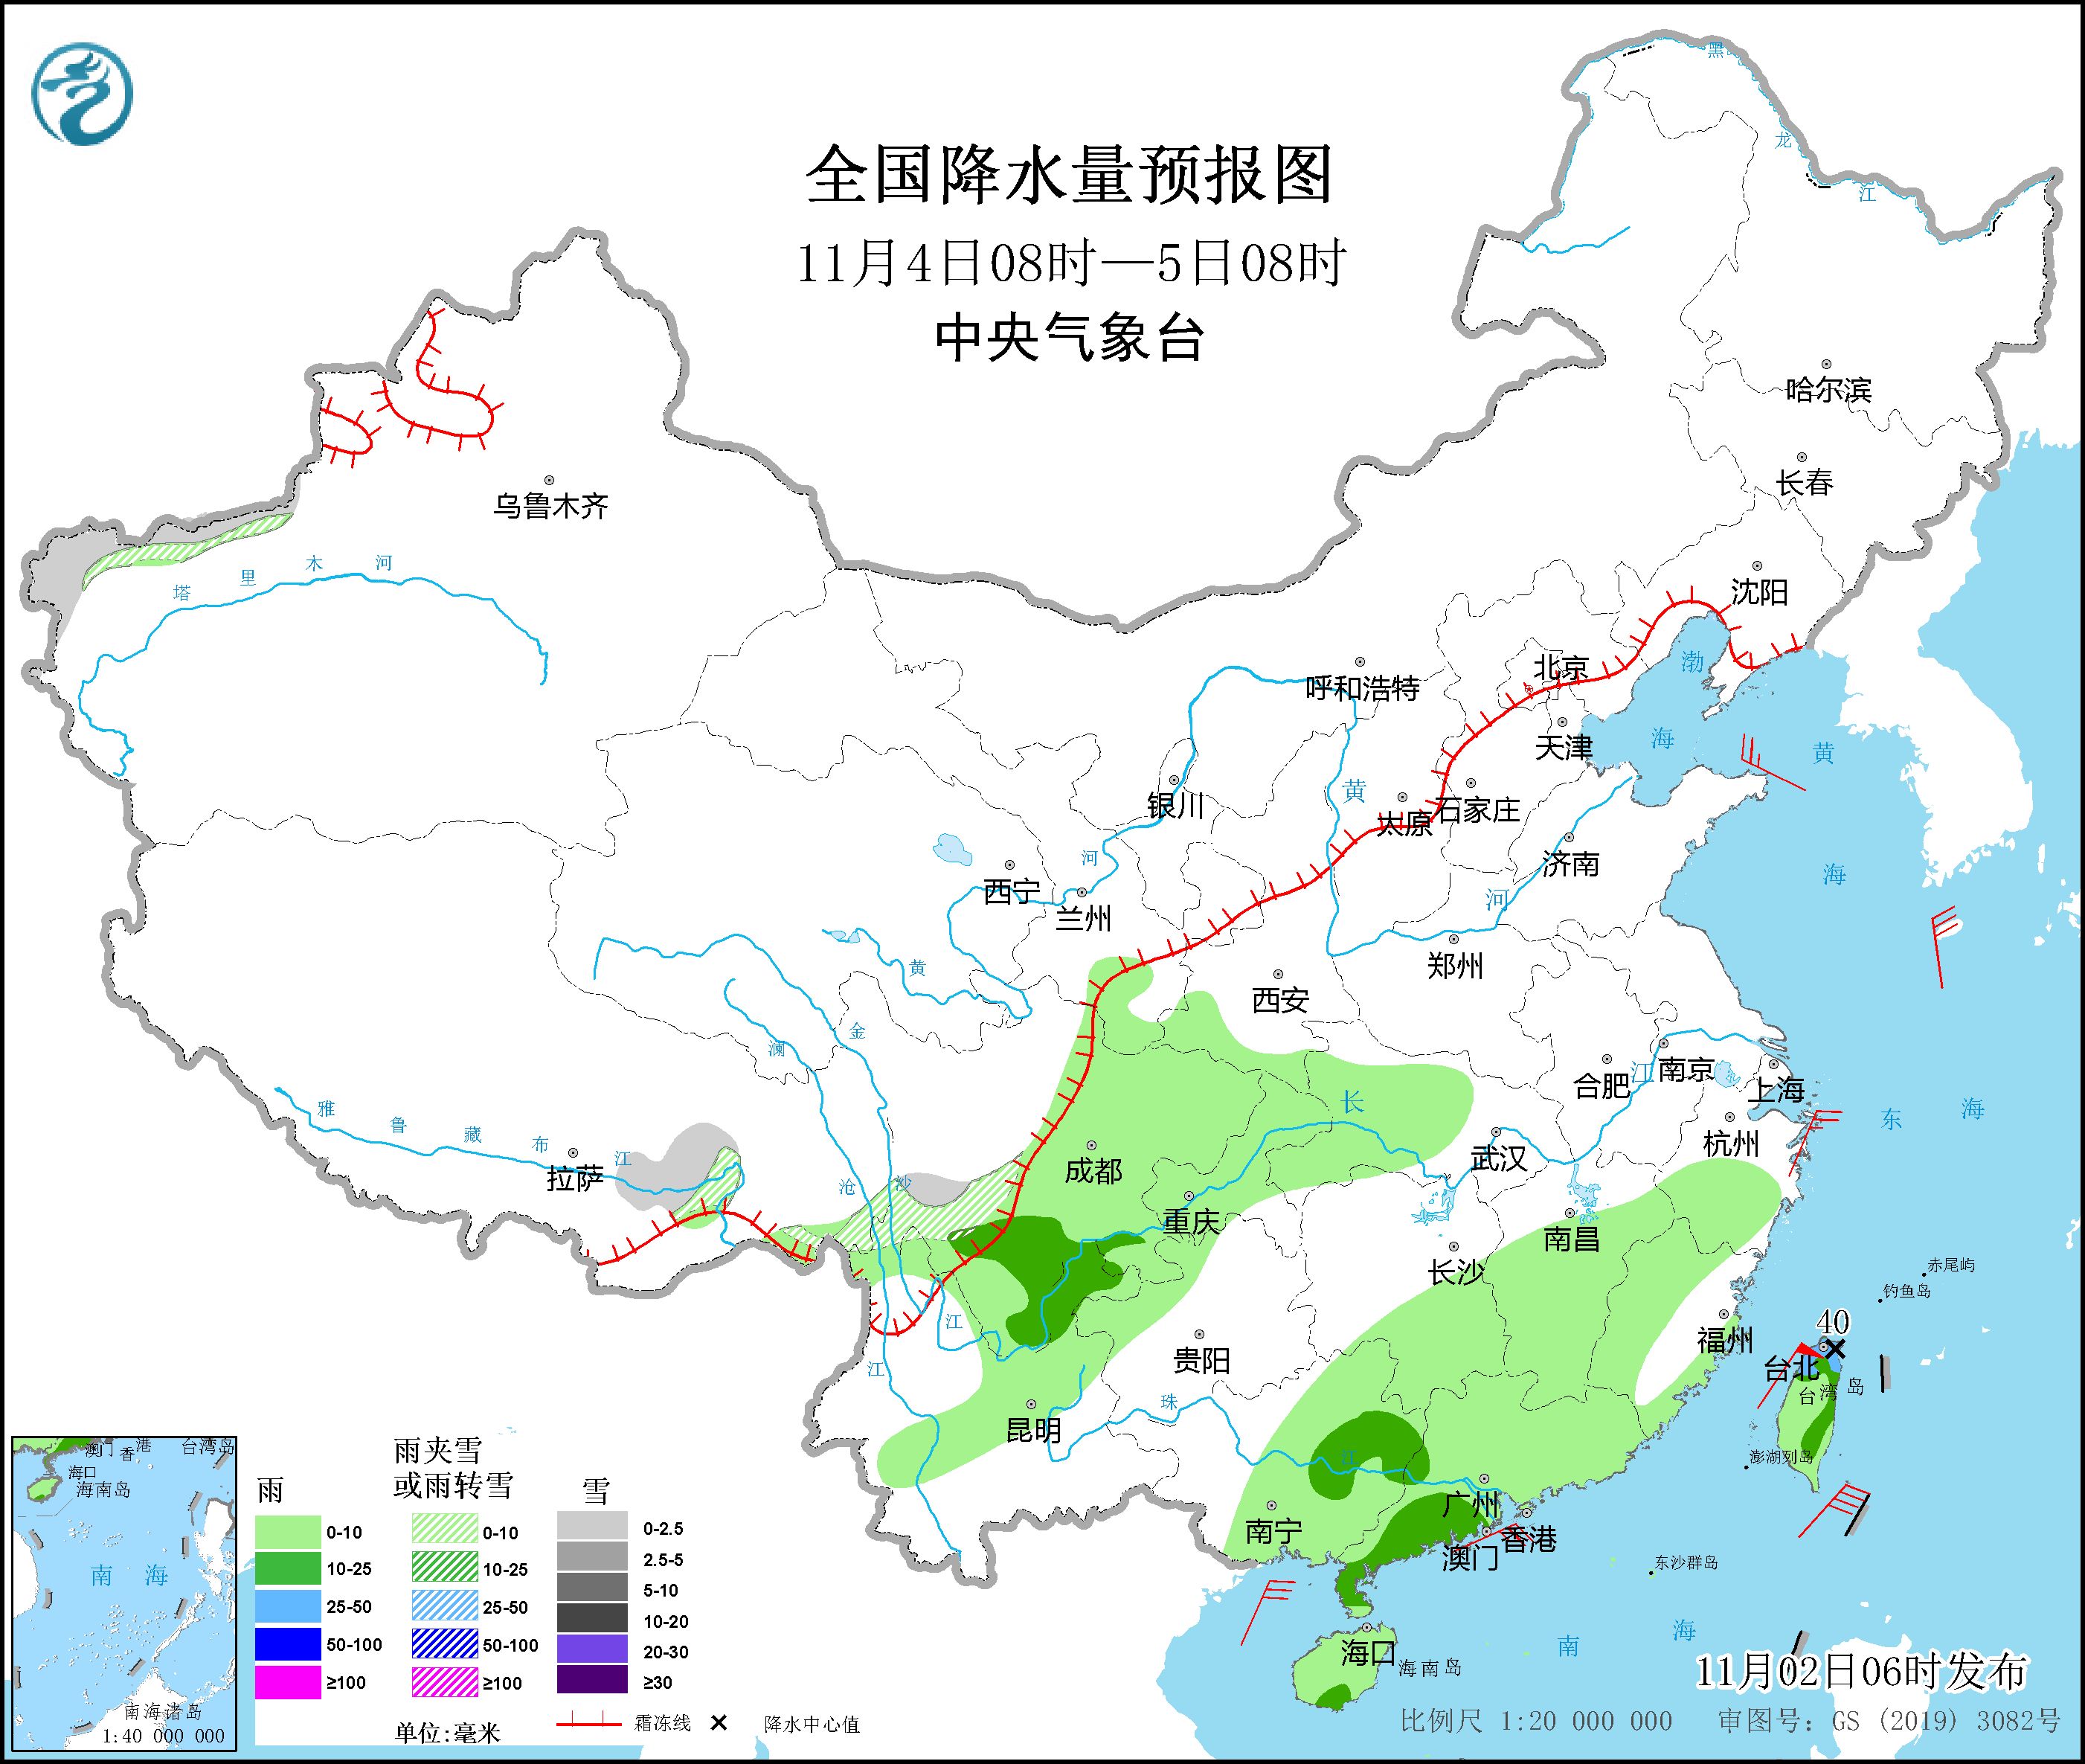 台风“尼格”逐渐靠近华南沿海 2日起弱冷空气将影响中东部地区